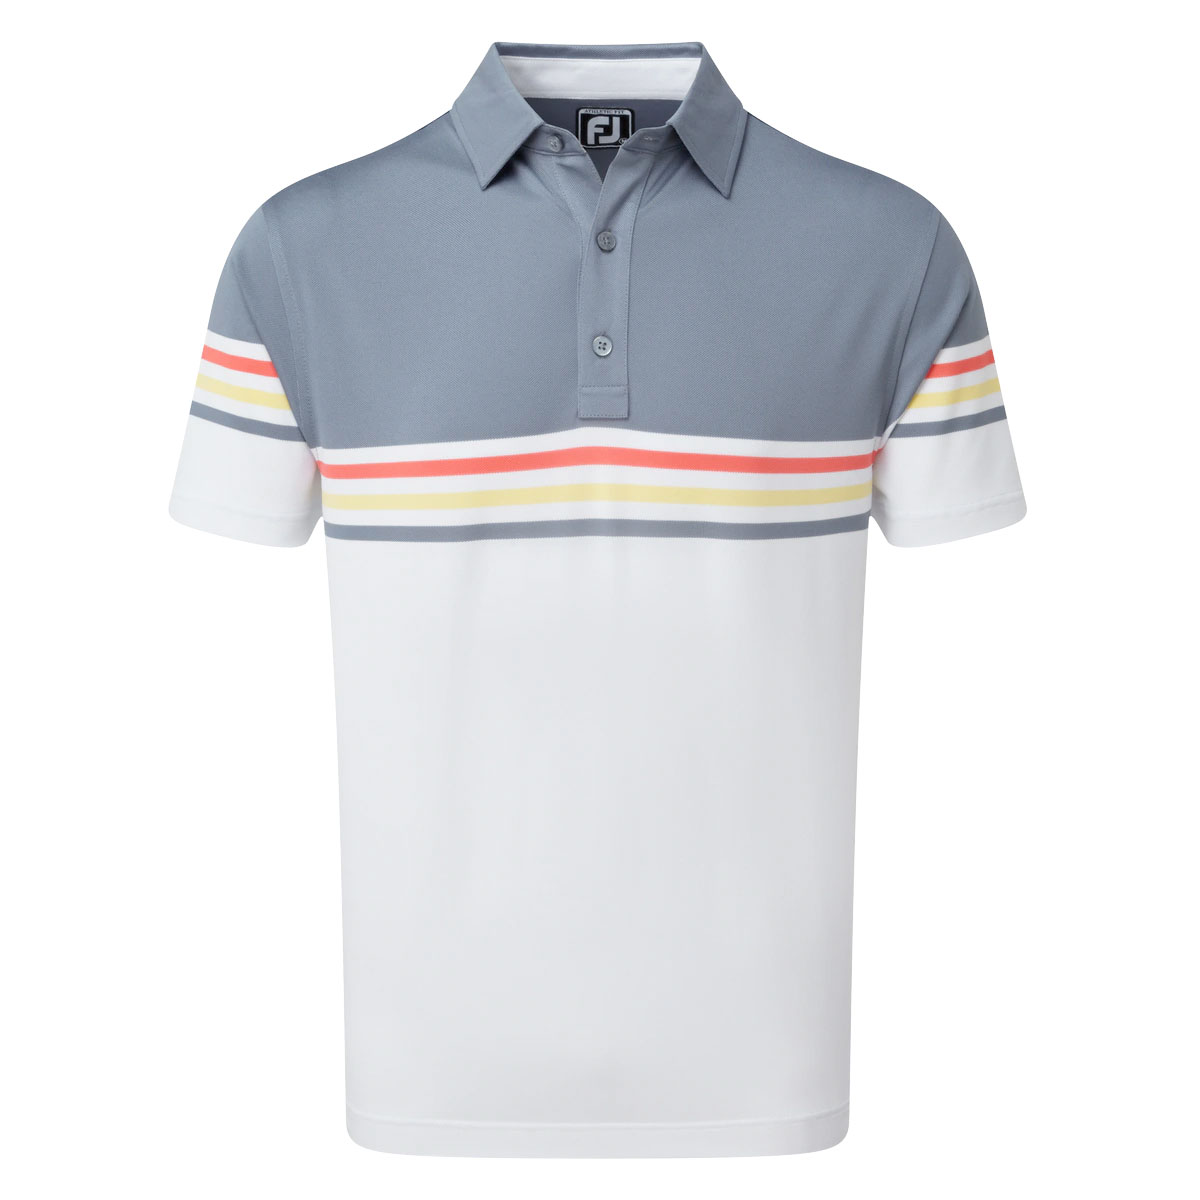 FootJoy Stretch Pique Colour Block Mens Golf Polo Shirt  - Slate/White